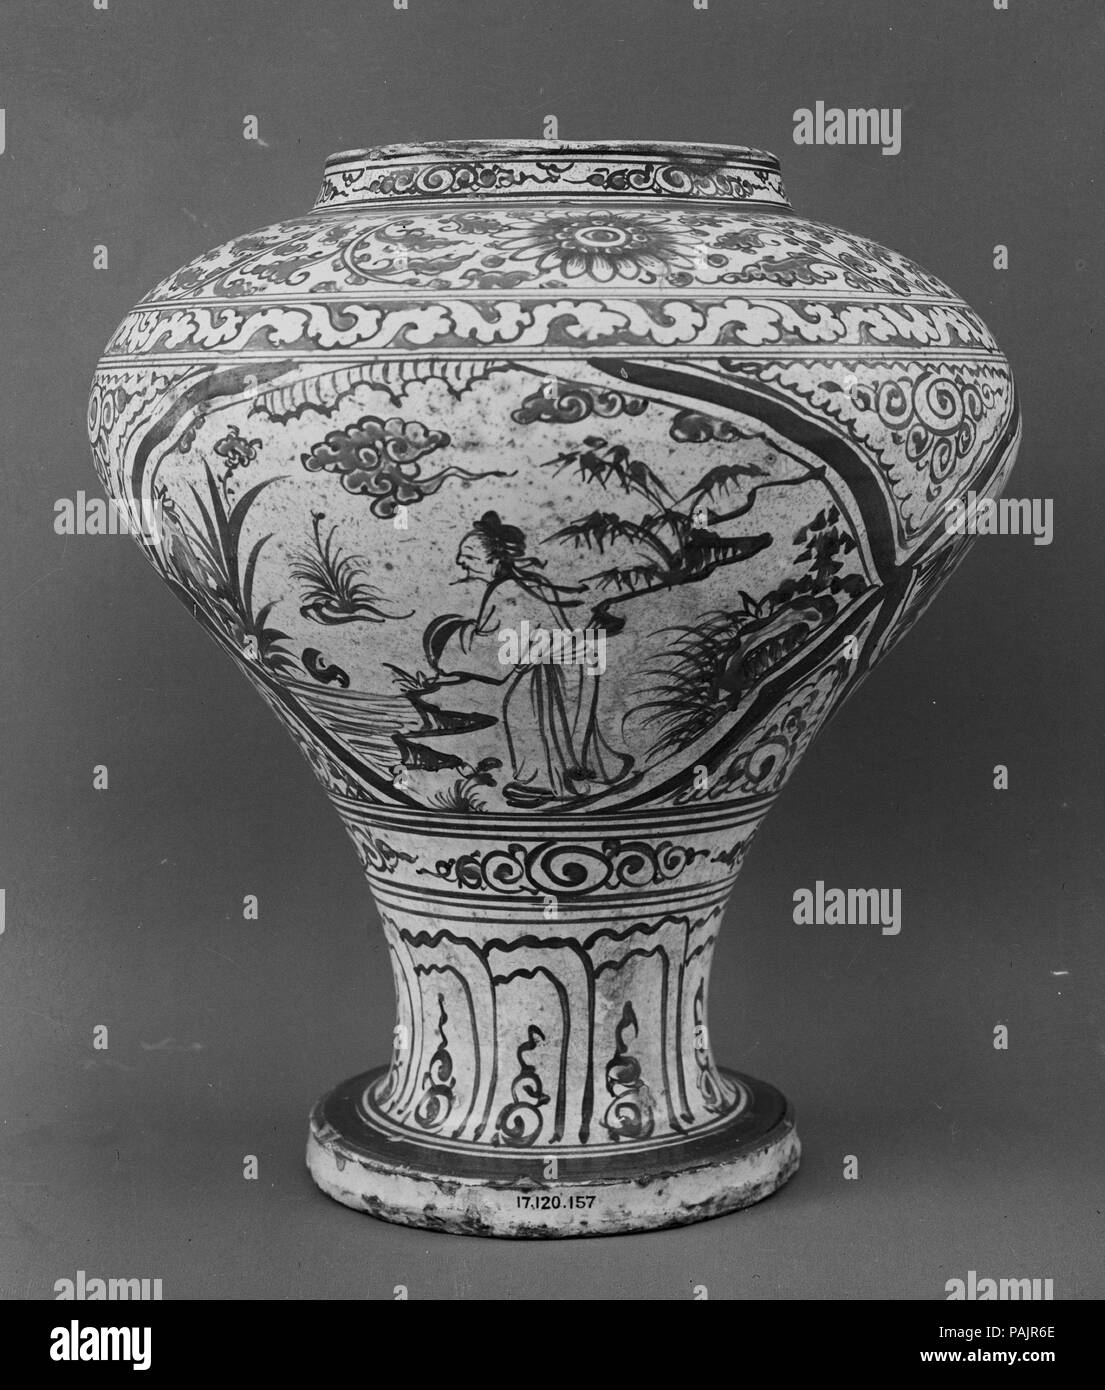 Jar. Culture: China. Dimensions: H. 12 1/2 in. (31.8 cm). Museum: Metropolitan Museum of Art, New York, USA. Stock Photo